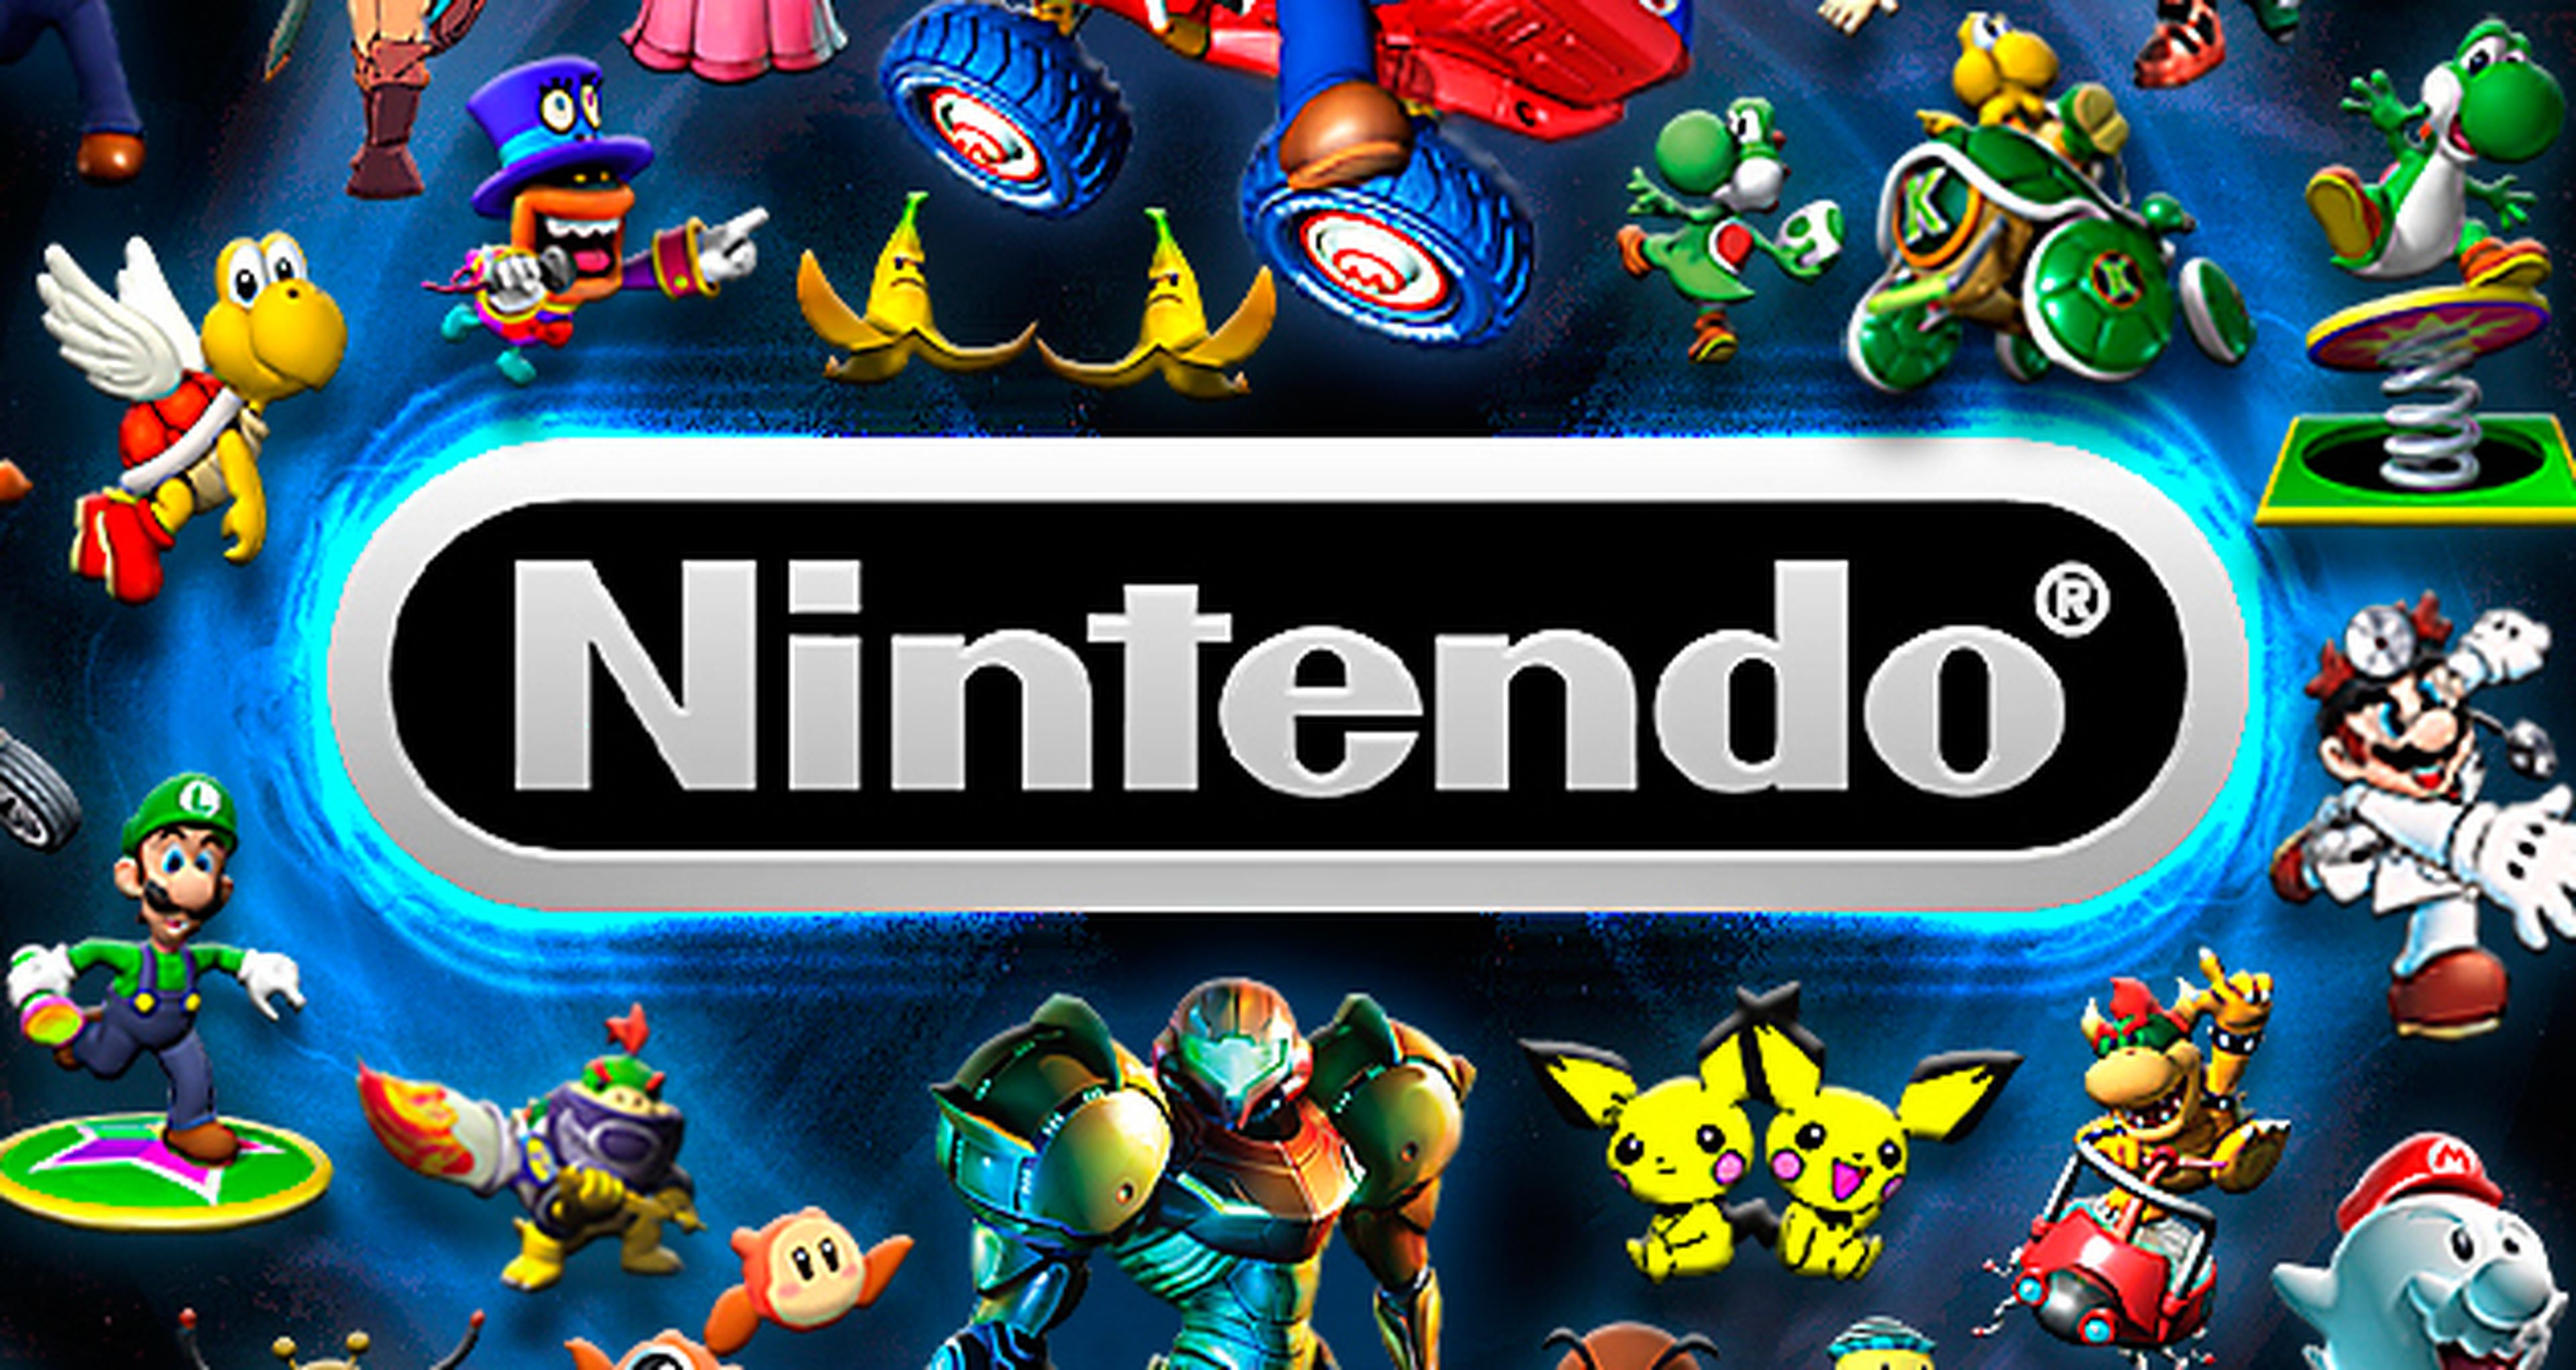 Nintendo - Su segundo juego para móviles contará con un personaje muy conocido